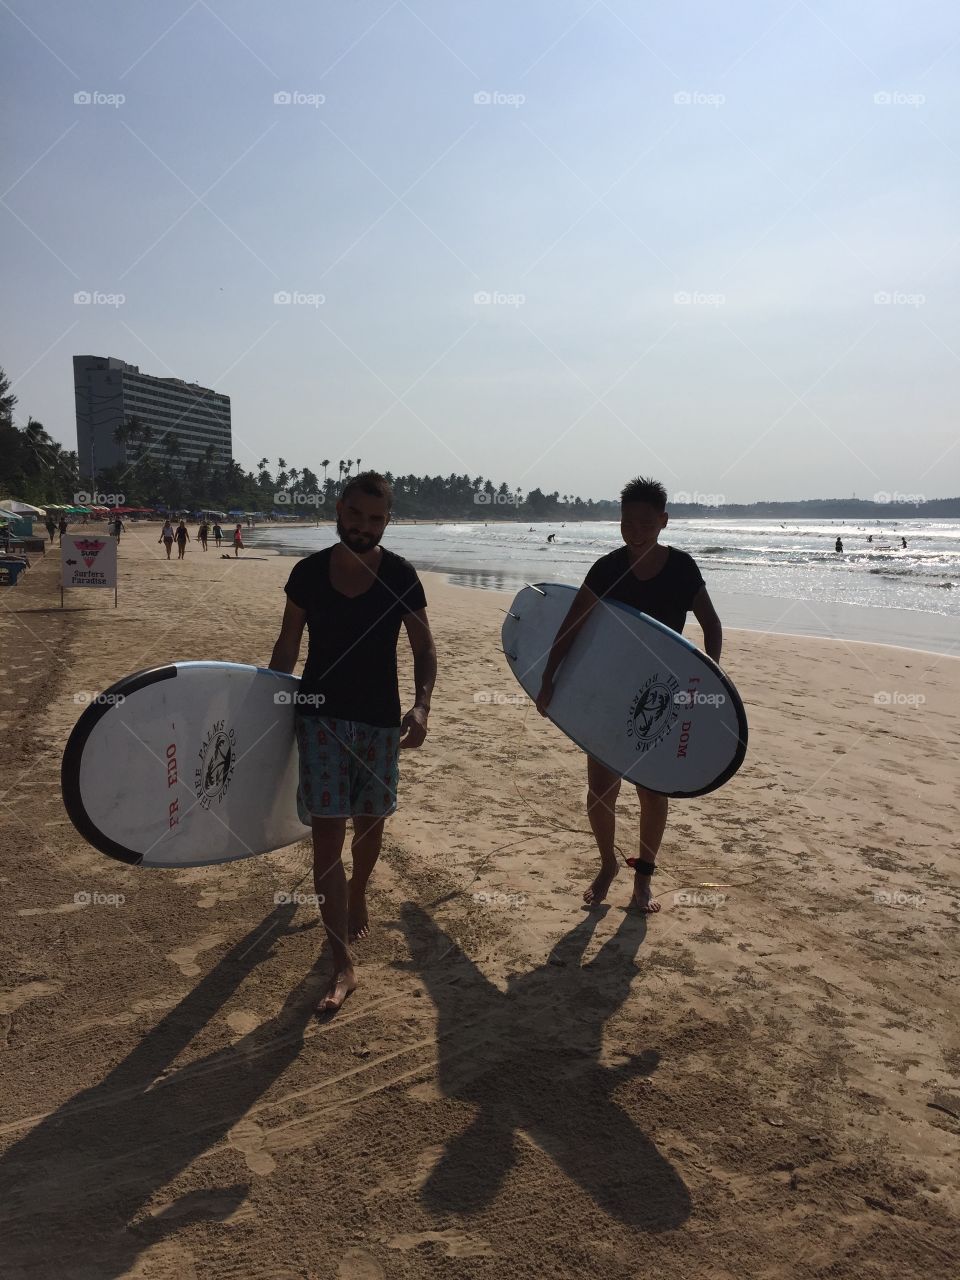 Sri Lanka / Surf / #Travelpo